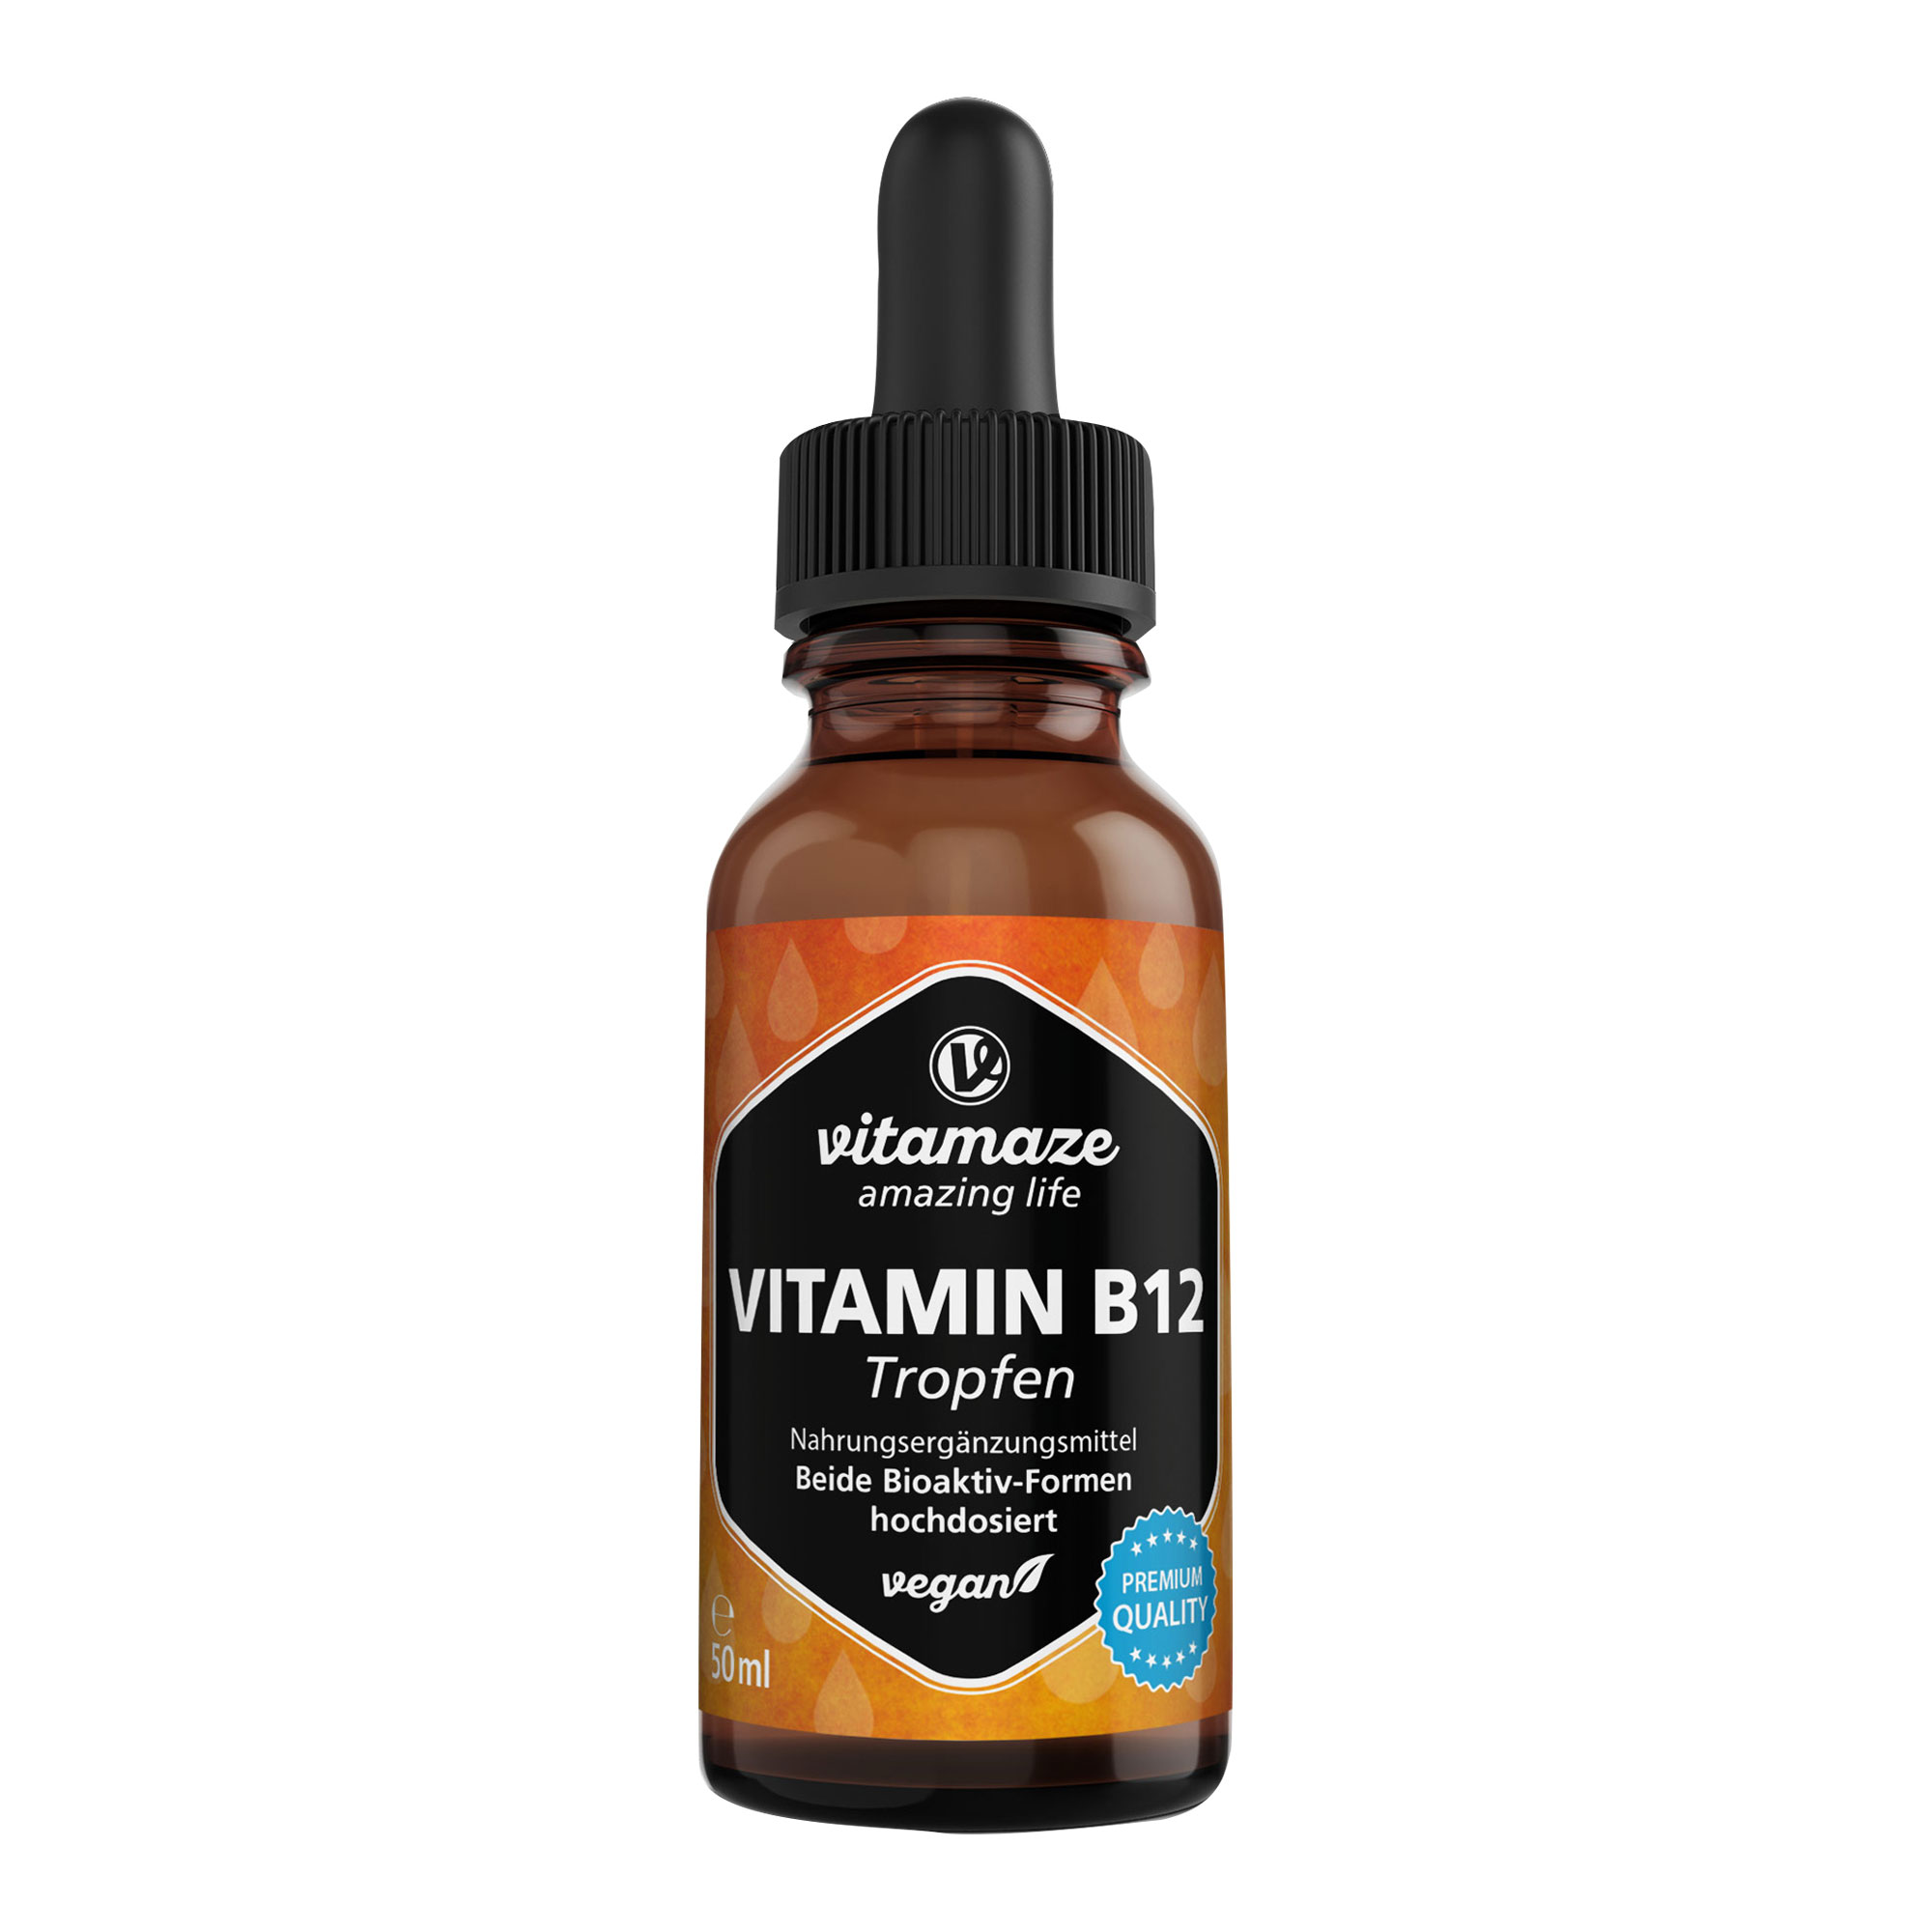 Nahrungsergänzungsmittel mit hochdosiertem Vitamin B12 in flüssiger Form.